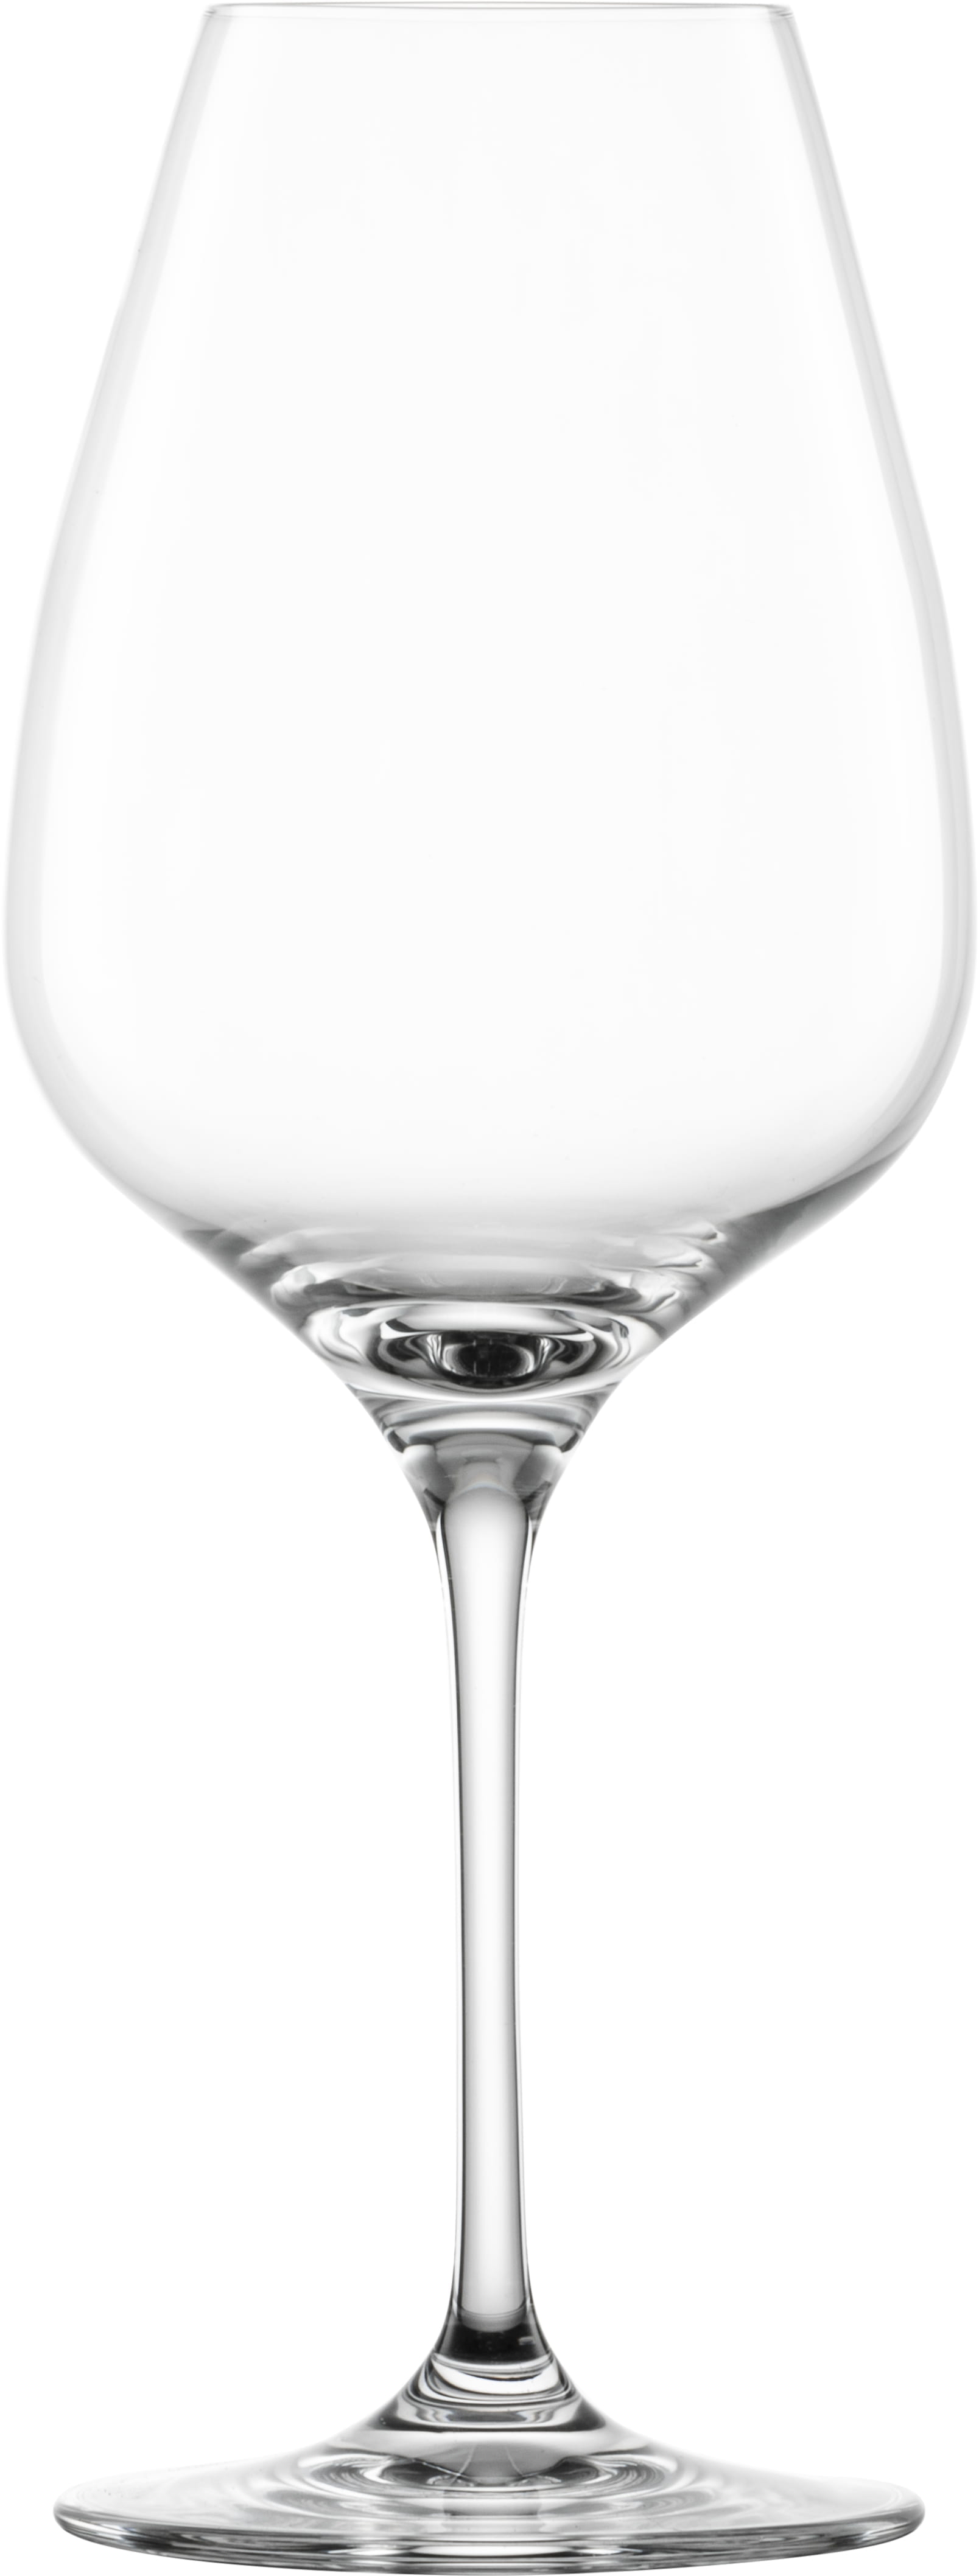 Eisch Glas Superior Sensis plus Syrah Glas 500/23 - 4 Stück im Geschenkkarton